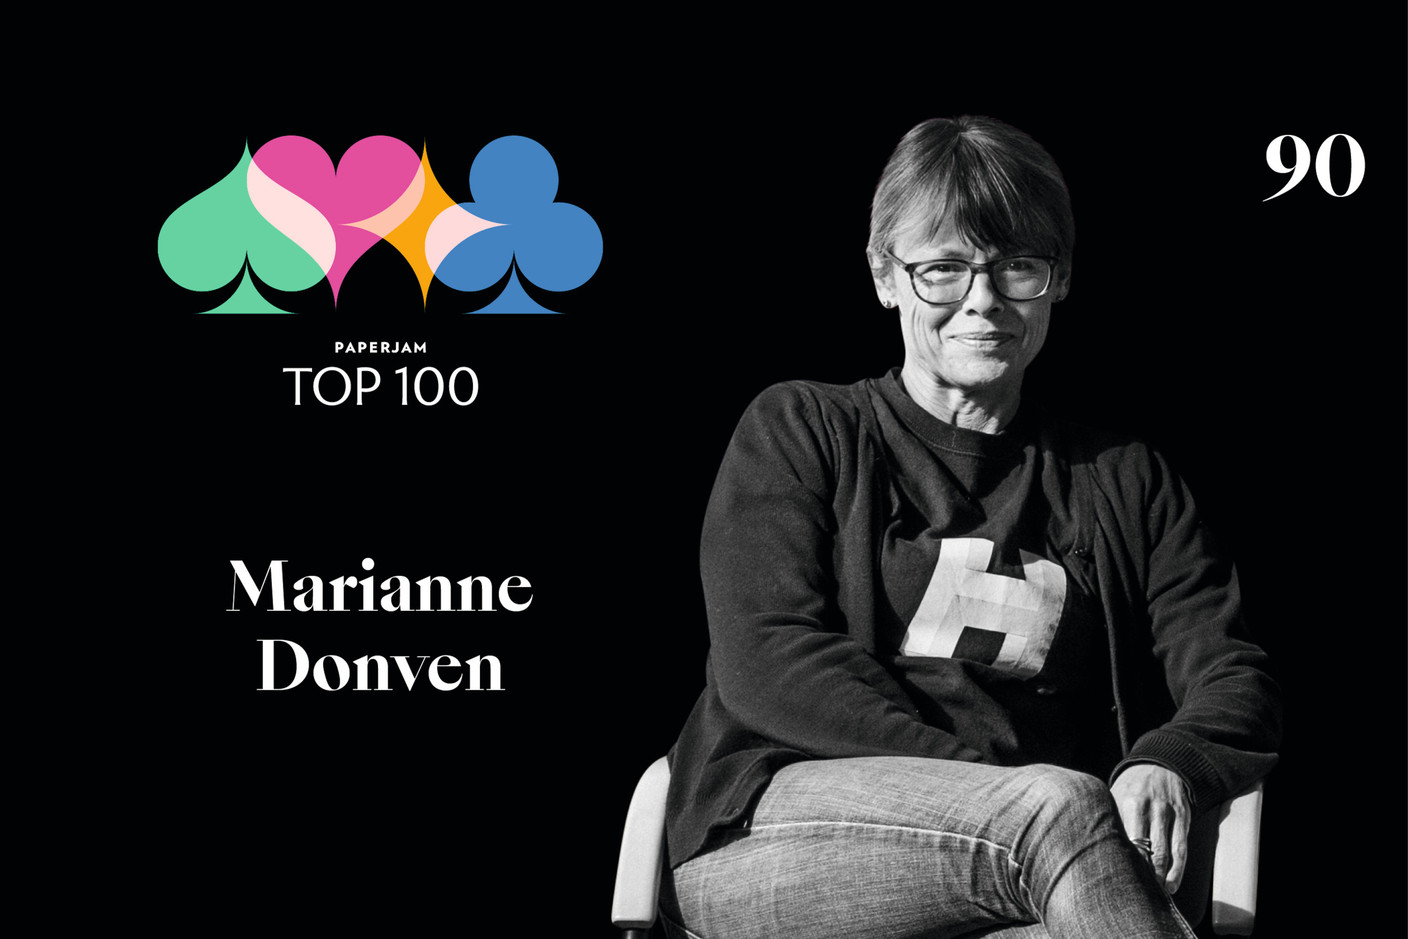 Marianne Donven, n°90 du Paperjam Top 100 2020. (Illustration: Maison Moderne)